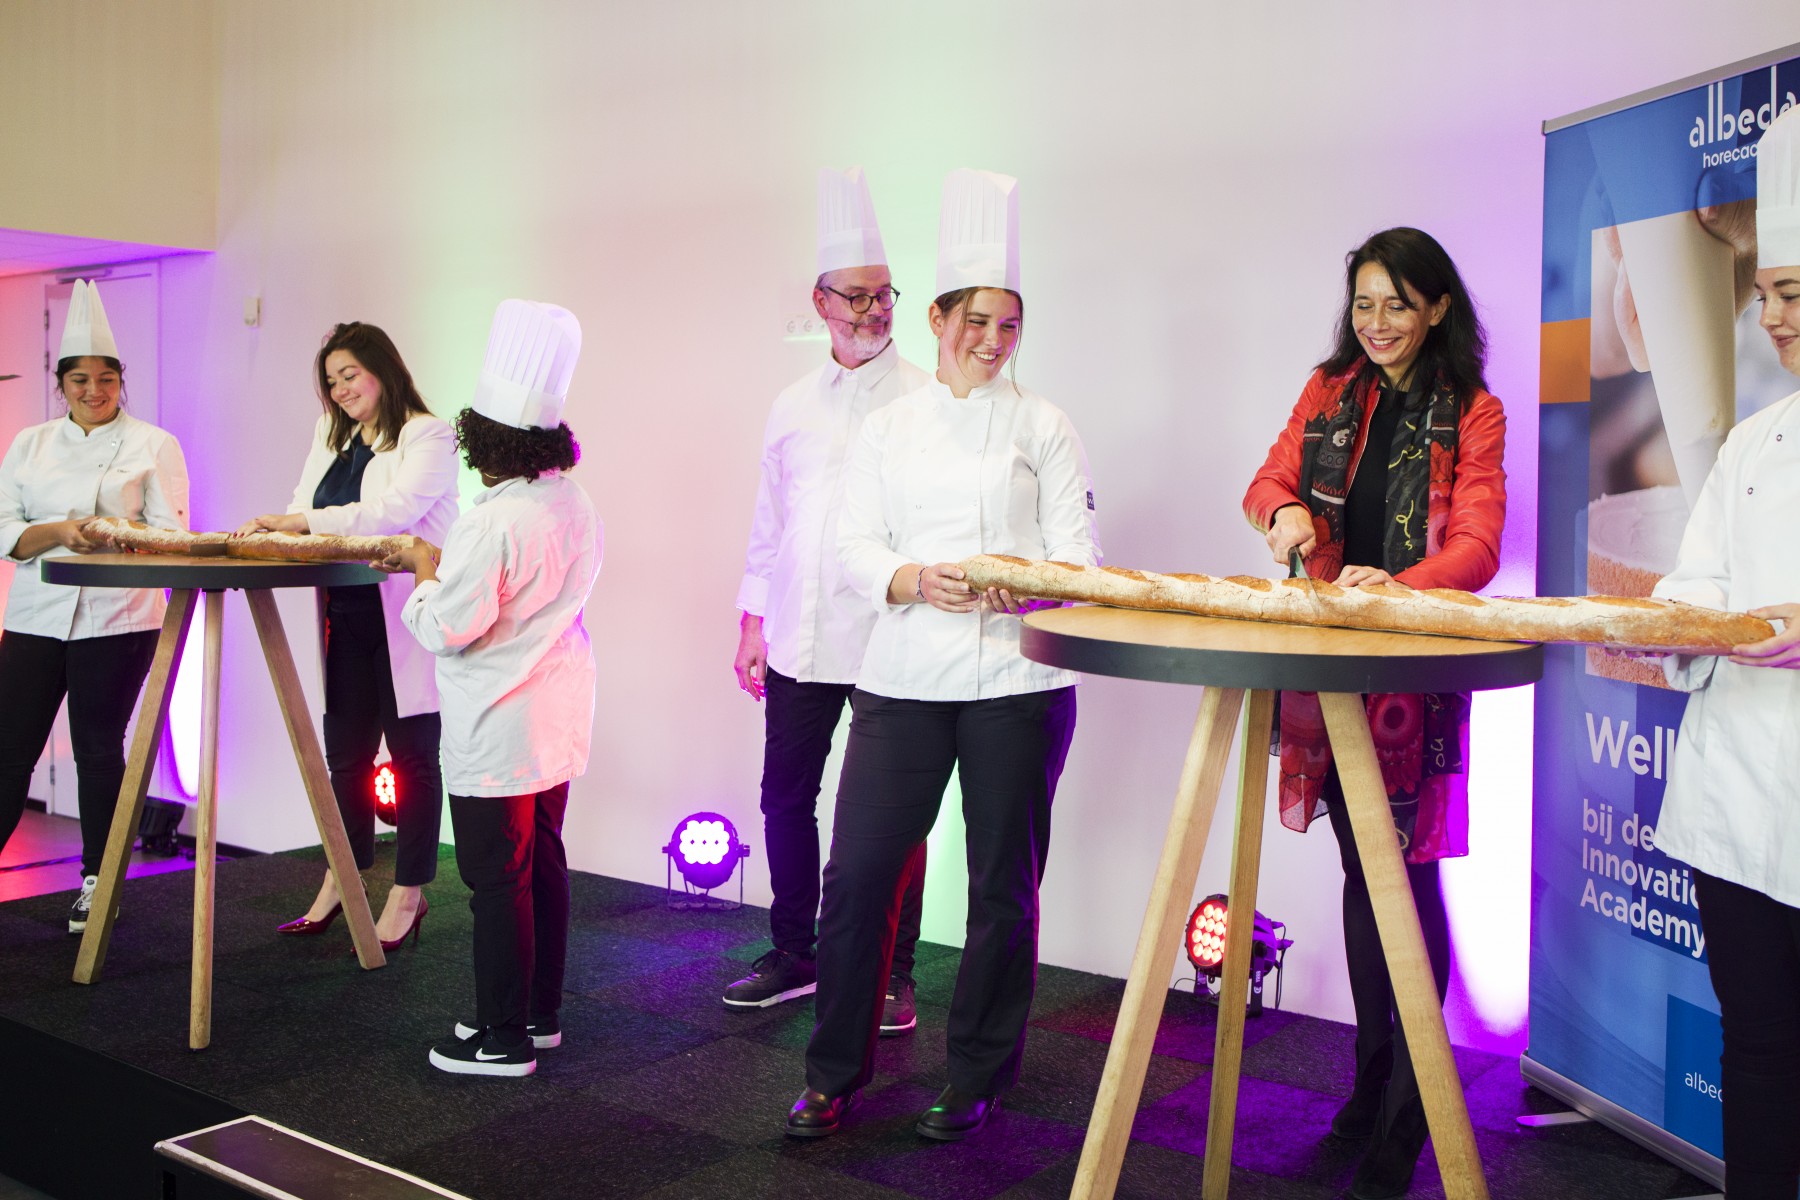 Bakery Innovation Academy in Vlaardingen: feestelijke start van bakkersopleidingen Albeda